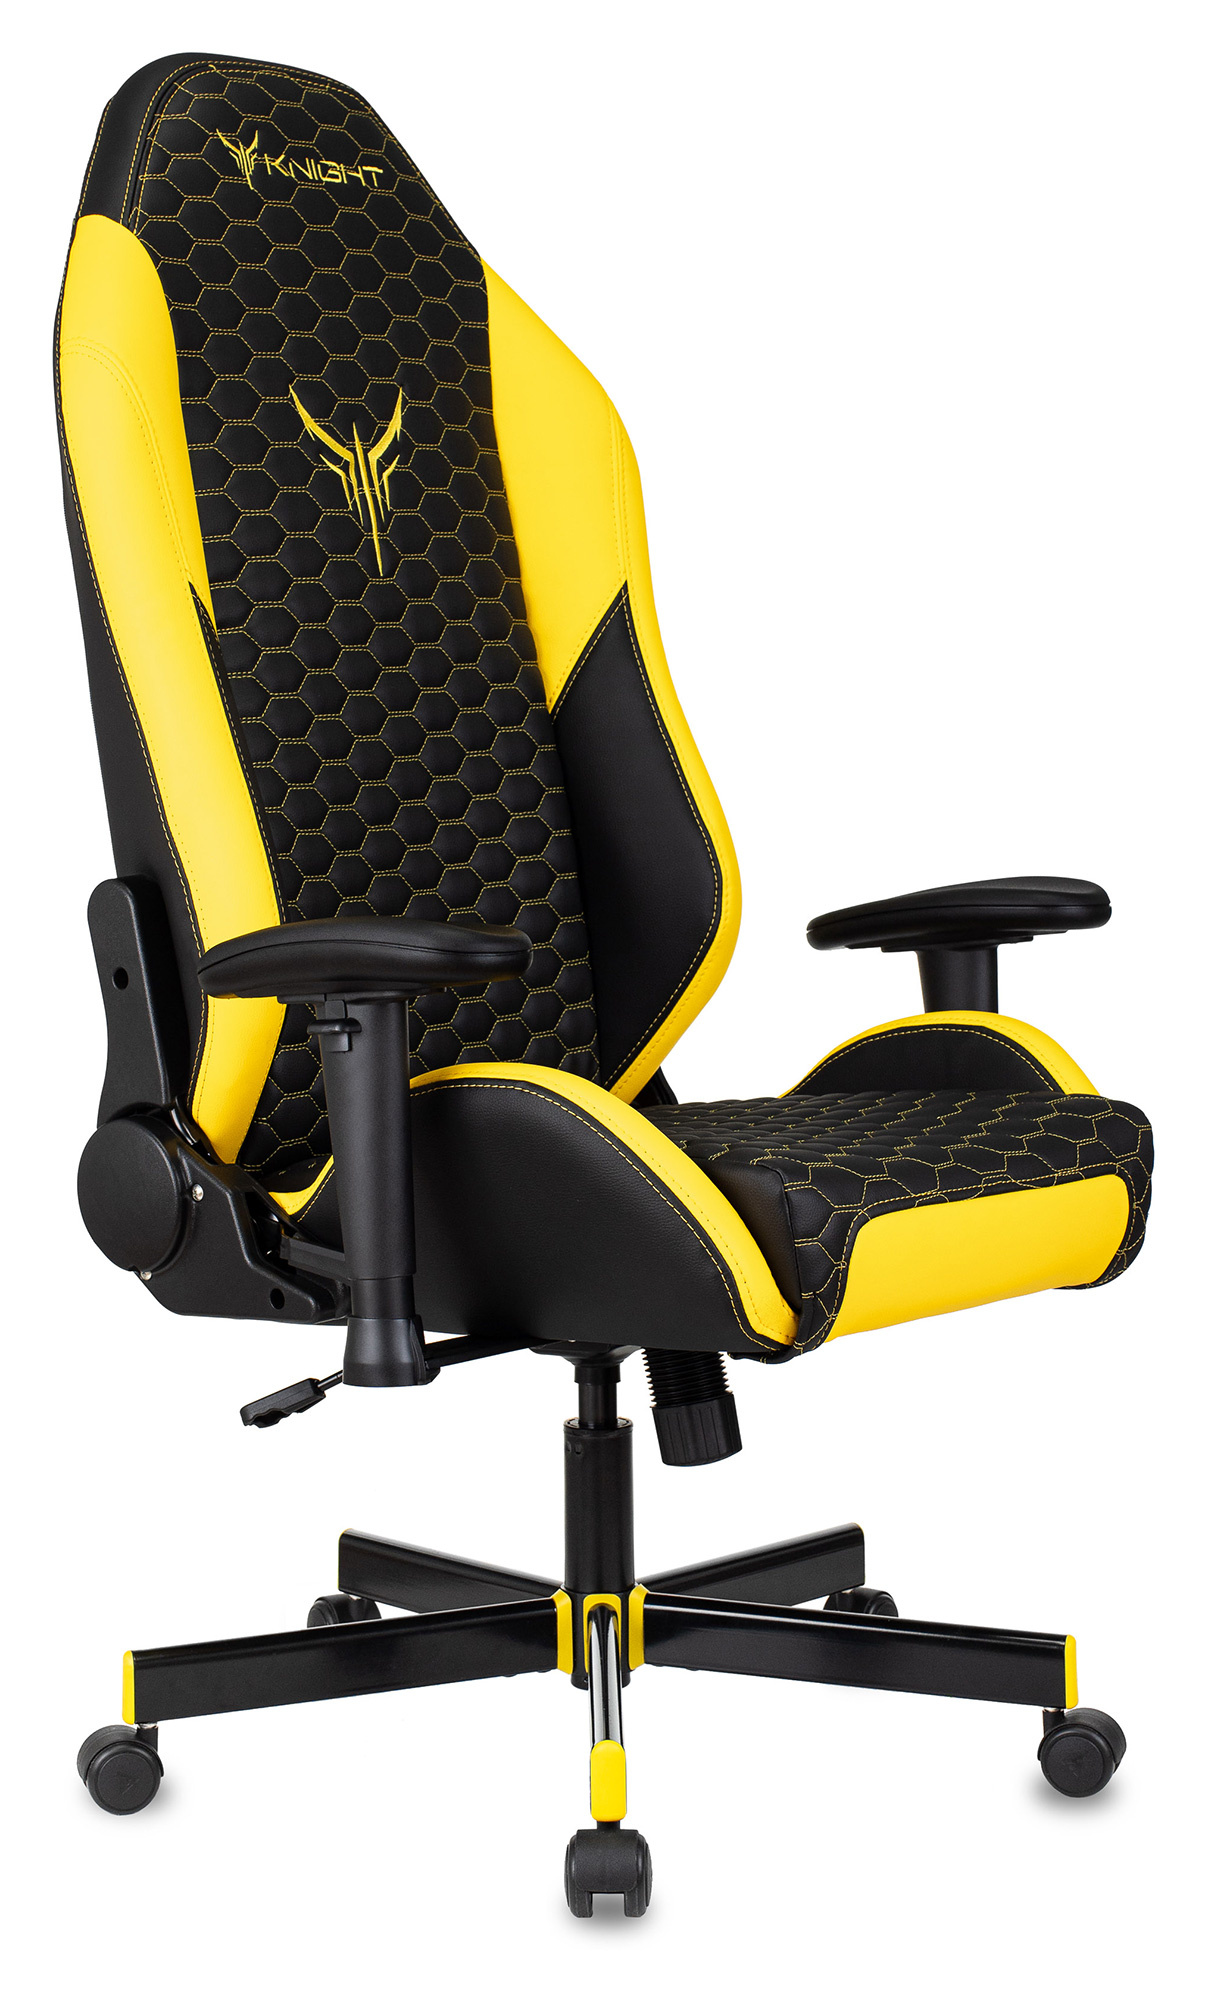 Кресло игровое Knight Neon, обивка: эко.кожа, цвет: черный/желтый, рисунок соты (KNIGHT NEON YELLOW) от магазина Buro.store